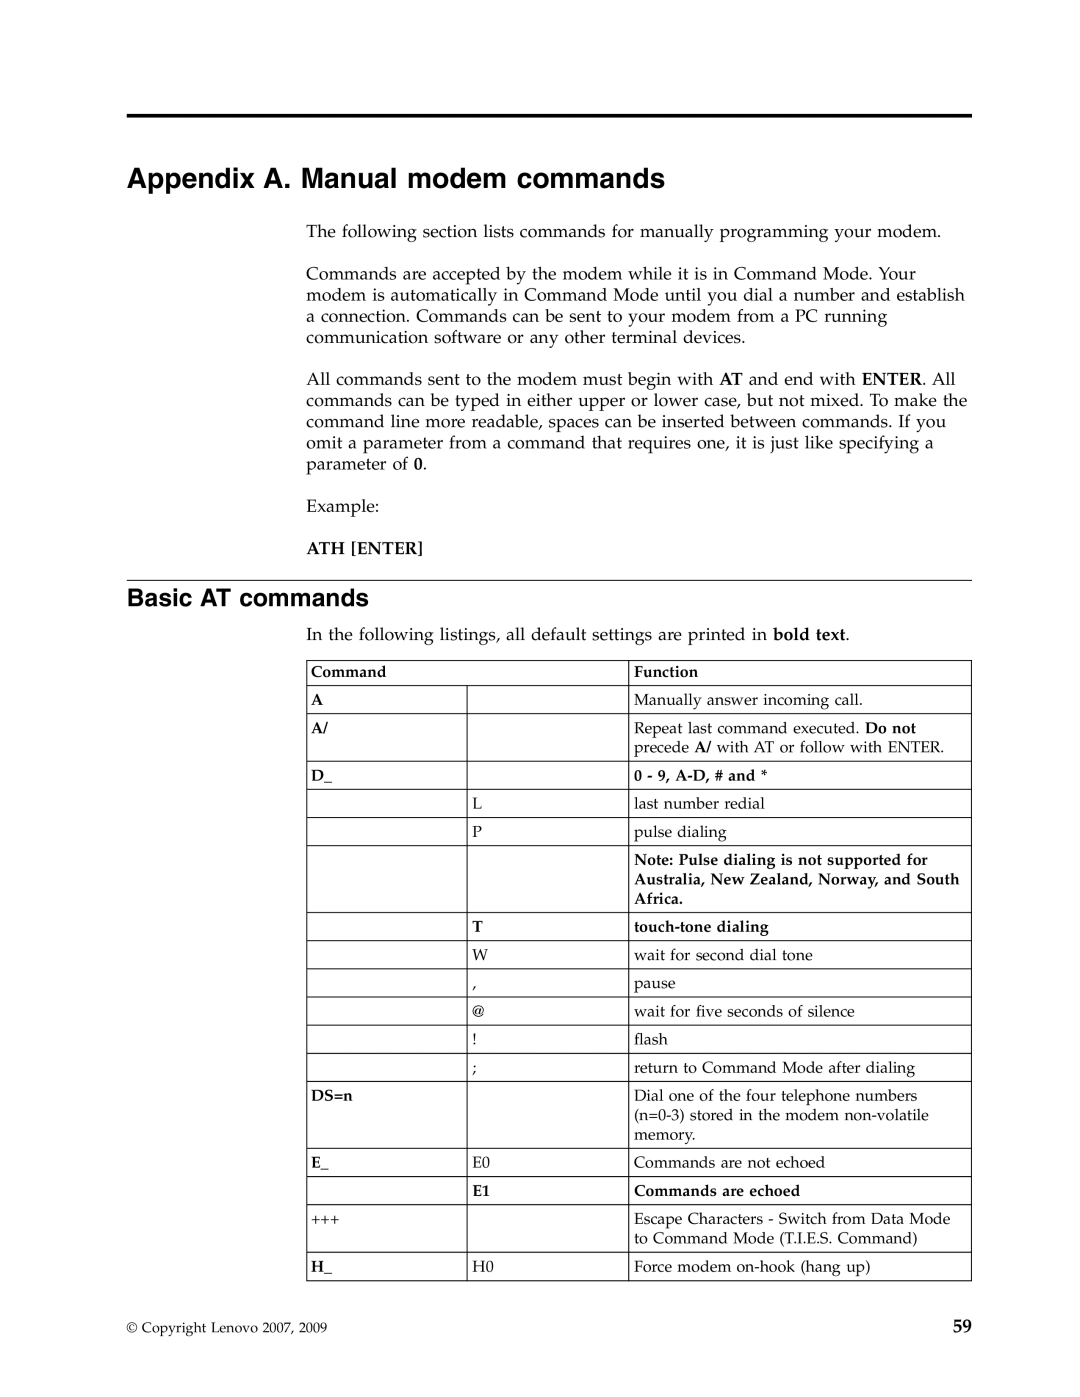 Lenovo 6019 manual Appendix A. Manual modem commands, Basic AT commands, Ath Enter 